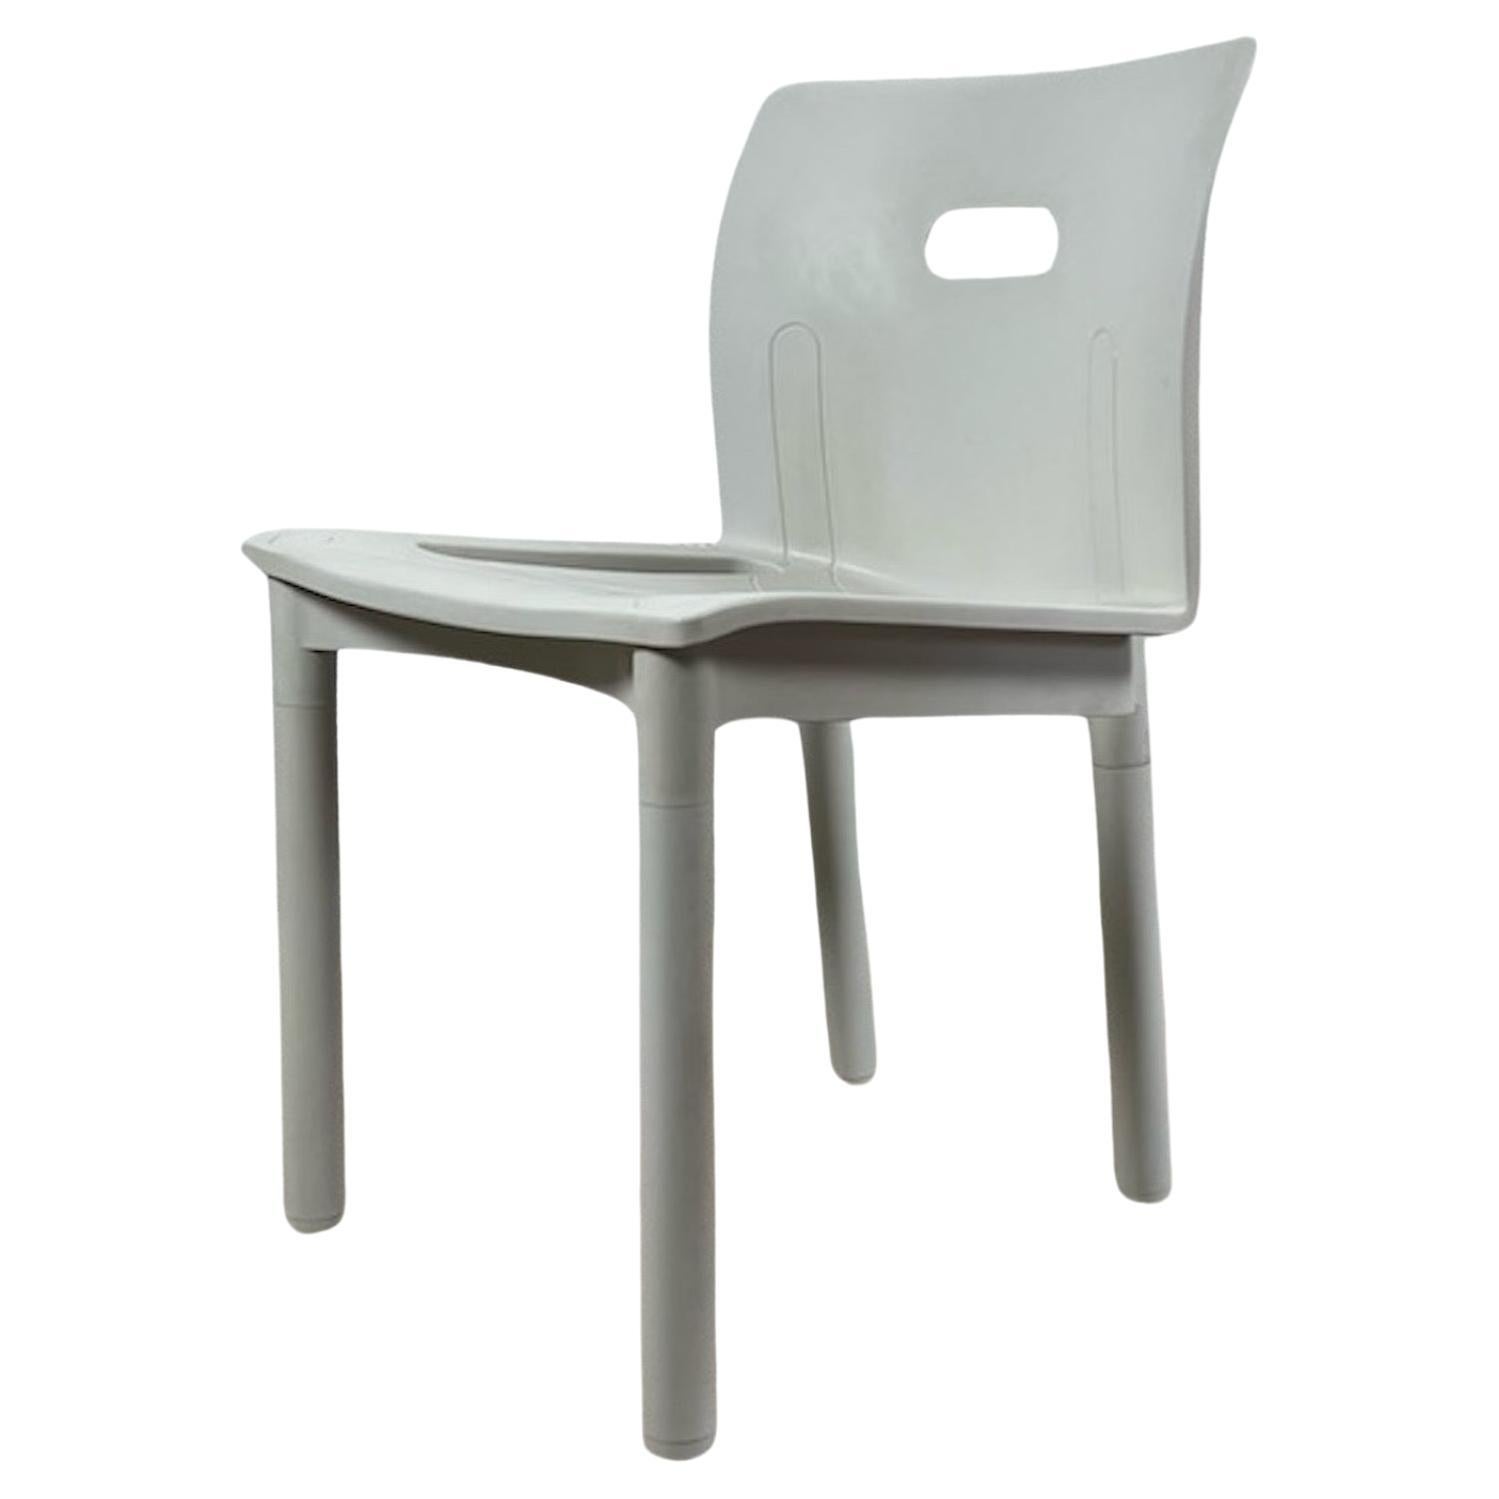 Schöne, preisgekrönte, stapelbare Stühle, Modell 4870, entworfen von Anna Castelli Ferrieri für Kartell im Jahr 1986. 

Dieses schöne Modell wurde 1987 mit dem 'Compasso D'Oro' ausgezeichnet. Das Design dieses Stuhls verbindet eine strenge Form mit